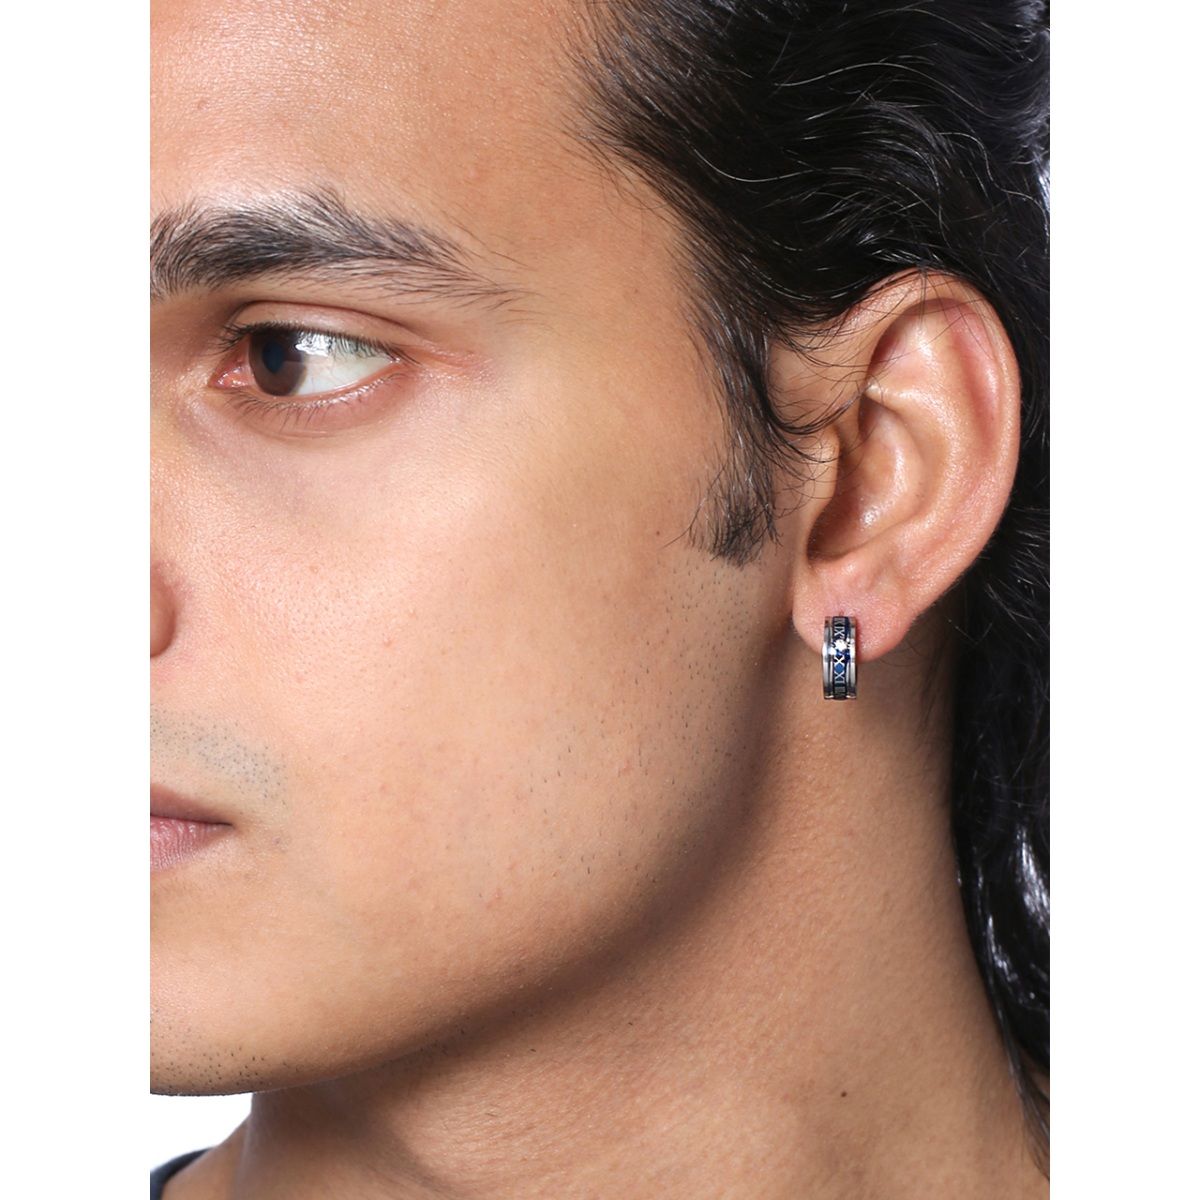 Earrings - Buy Earrings Online in India at Best Price | Zivame